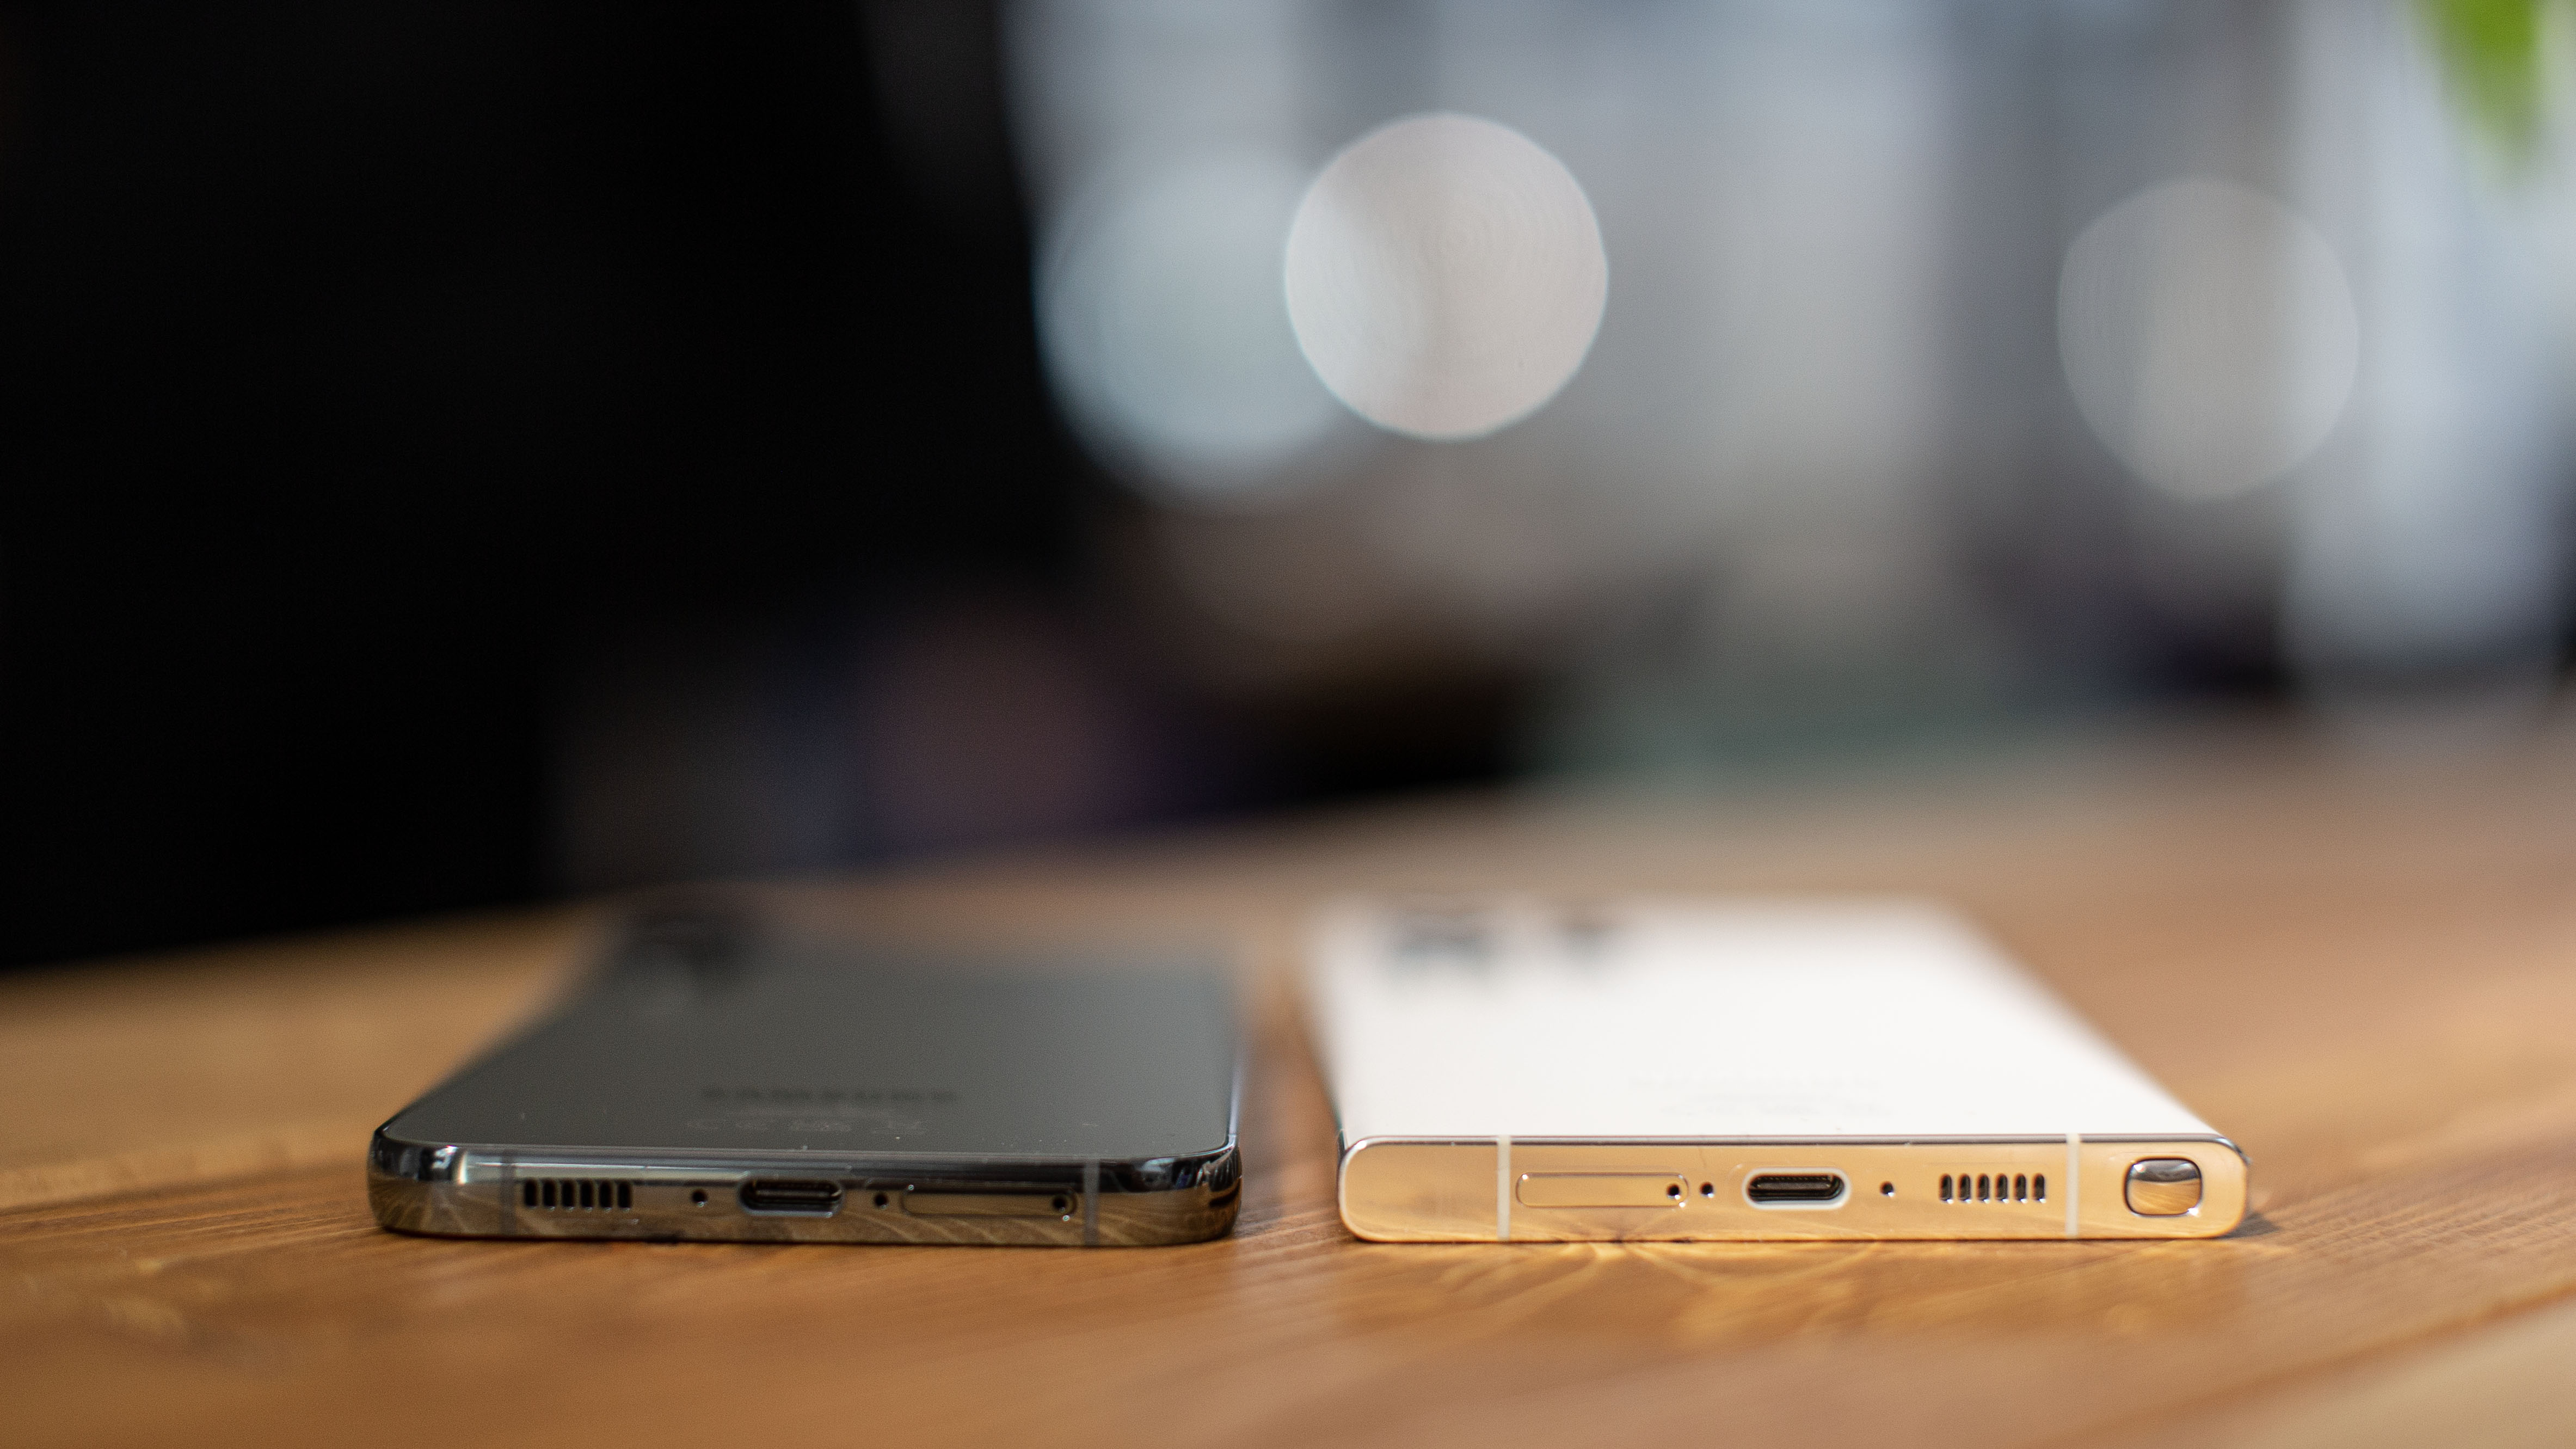 Samsung Galaxy S24: Neue S-Klasse in Titan mit mehr KI